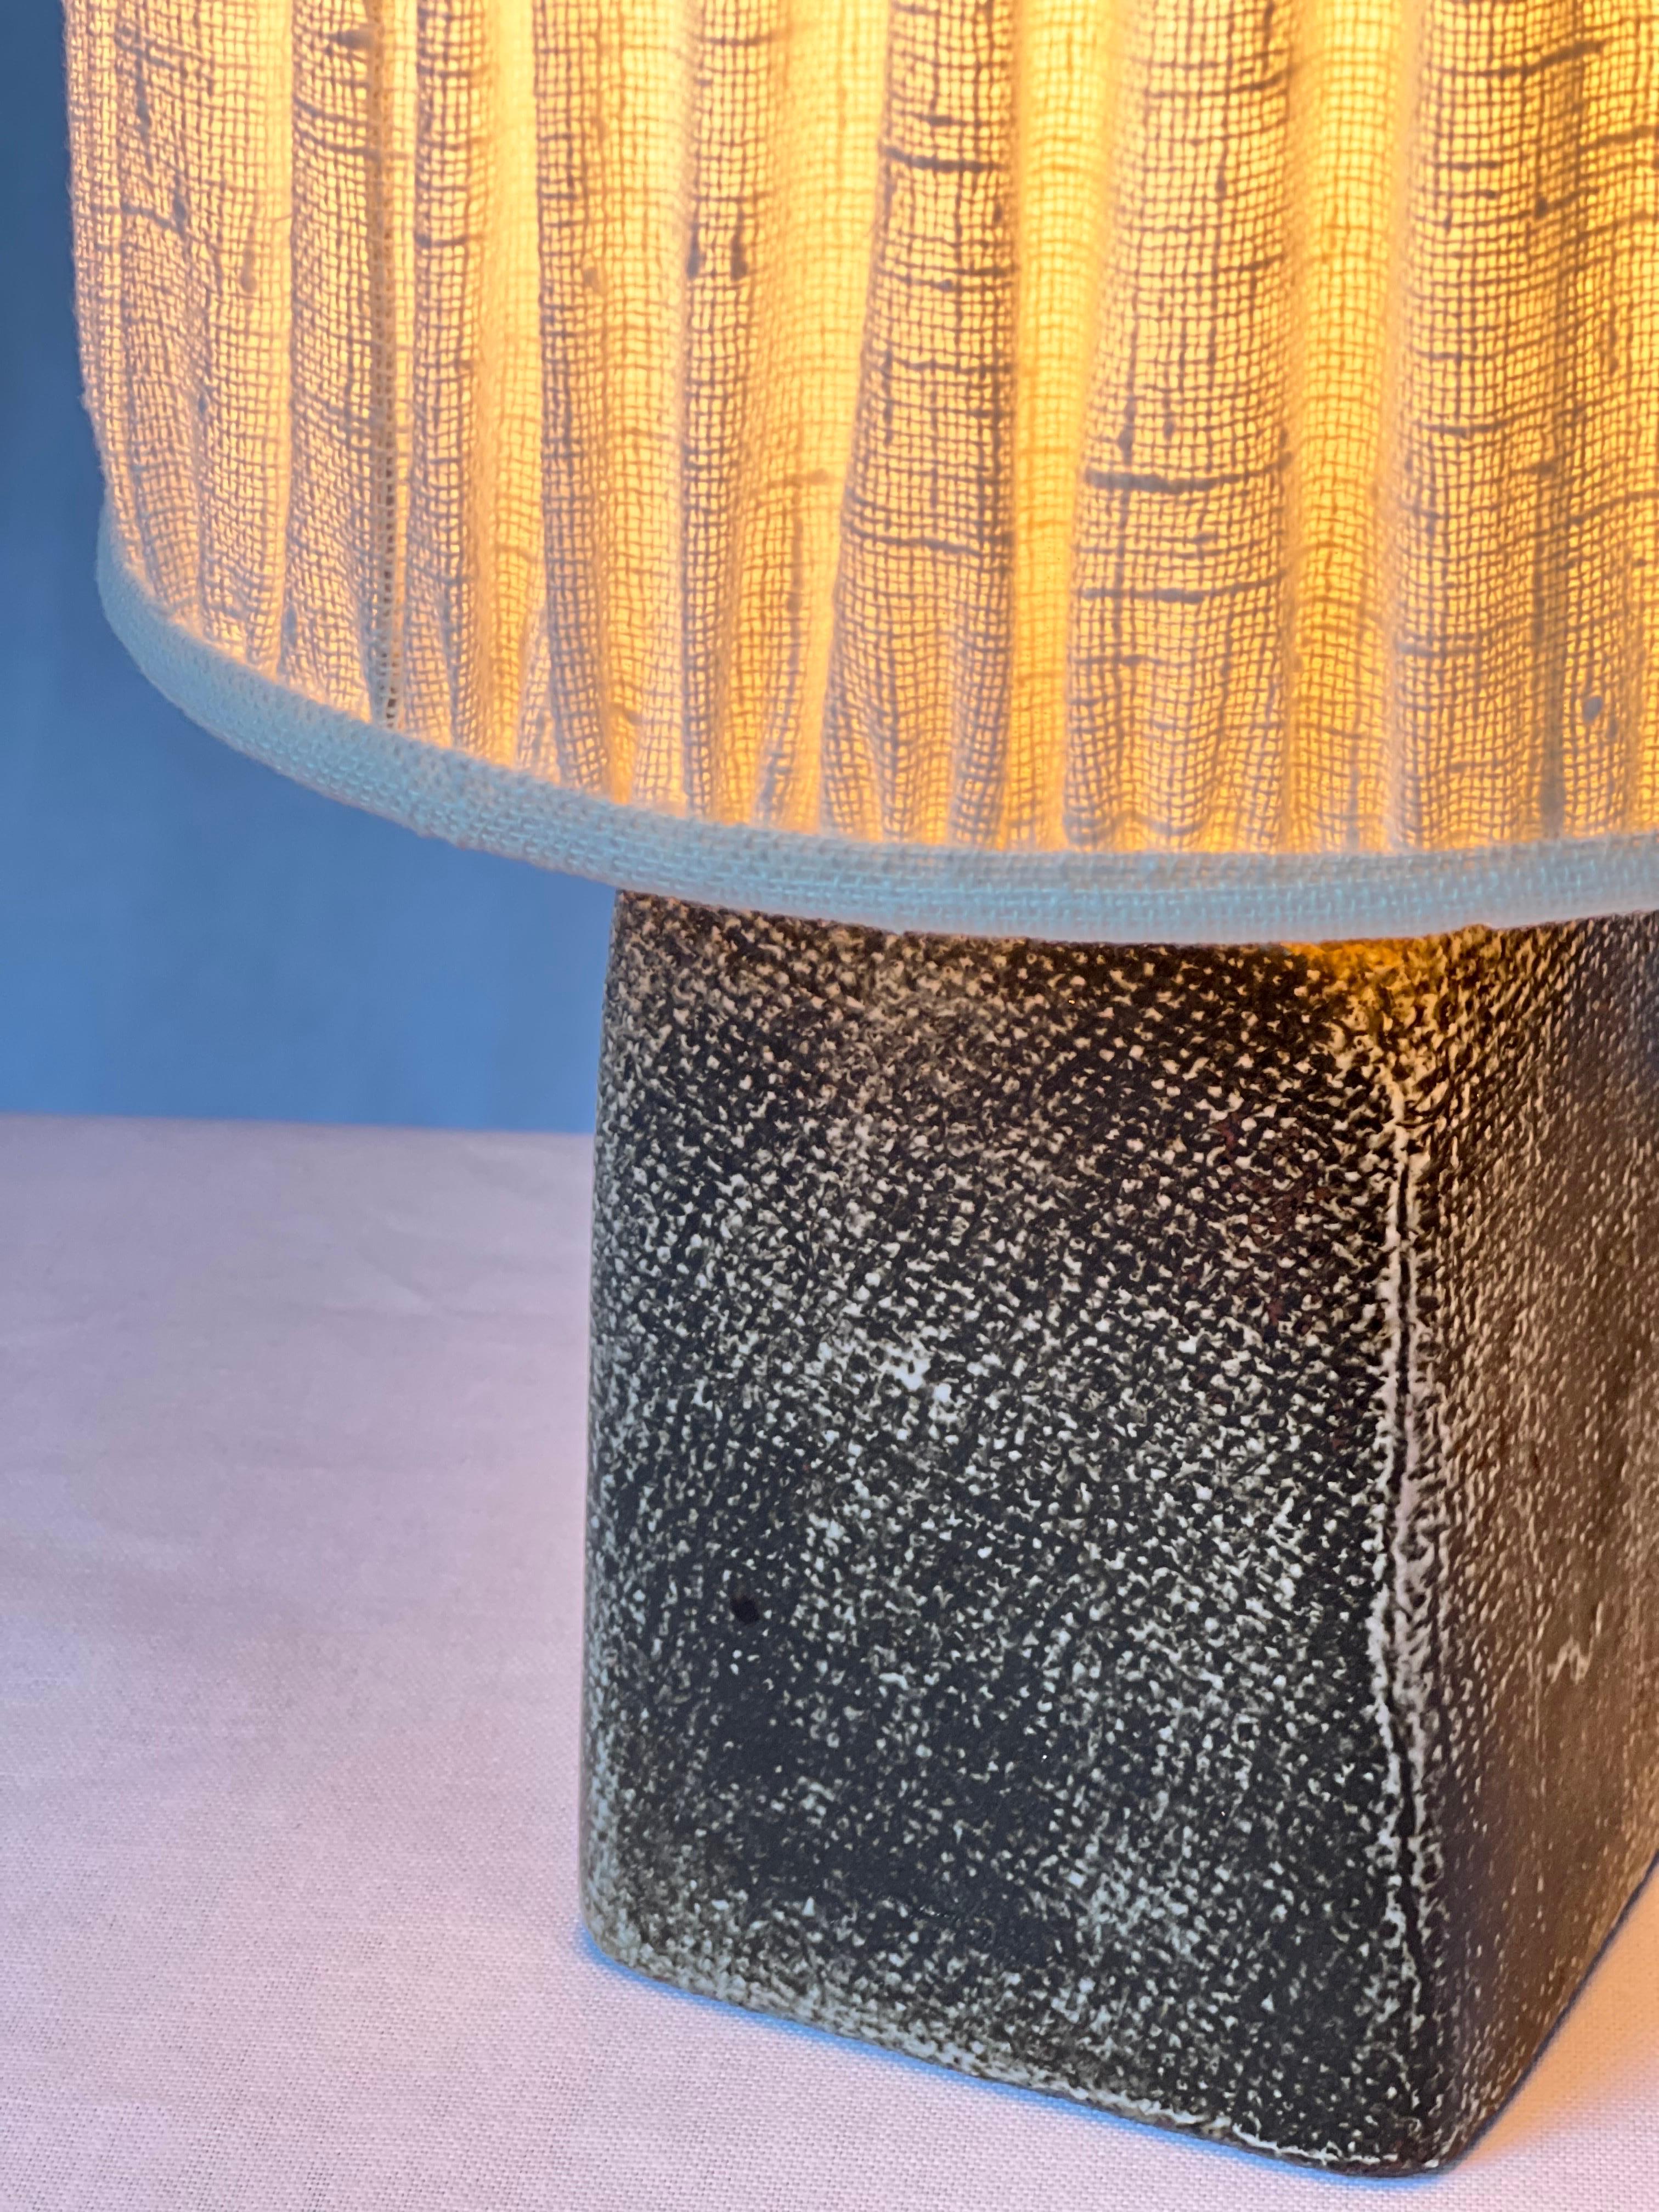 Il s'agit d'une lampe de table unique fabriquée à la main avec une belle finition grise texturée. Il s'agit d'une véritable lampe et non d'un vase transformé ultérieurement. Vous pouvez voir l'émail autour du trou du câble sur la photo de détail.